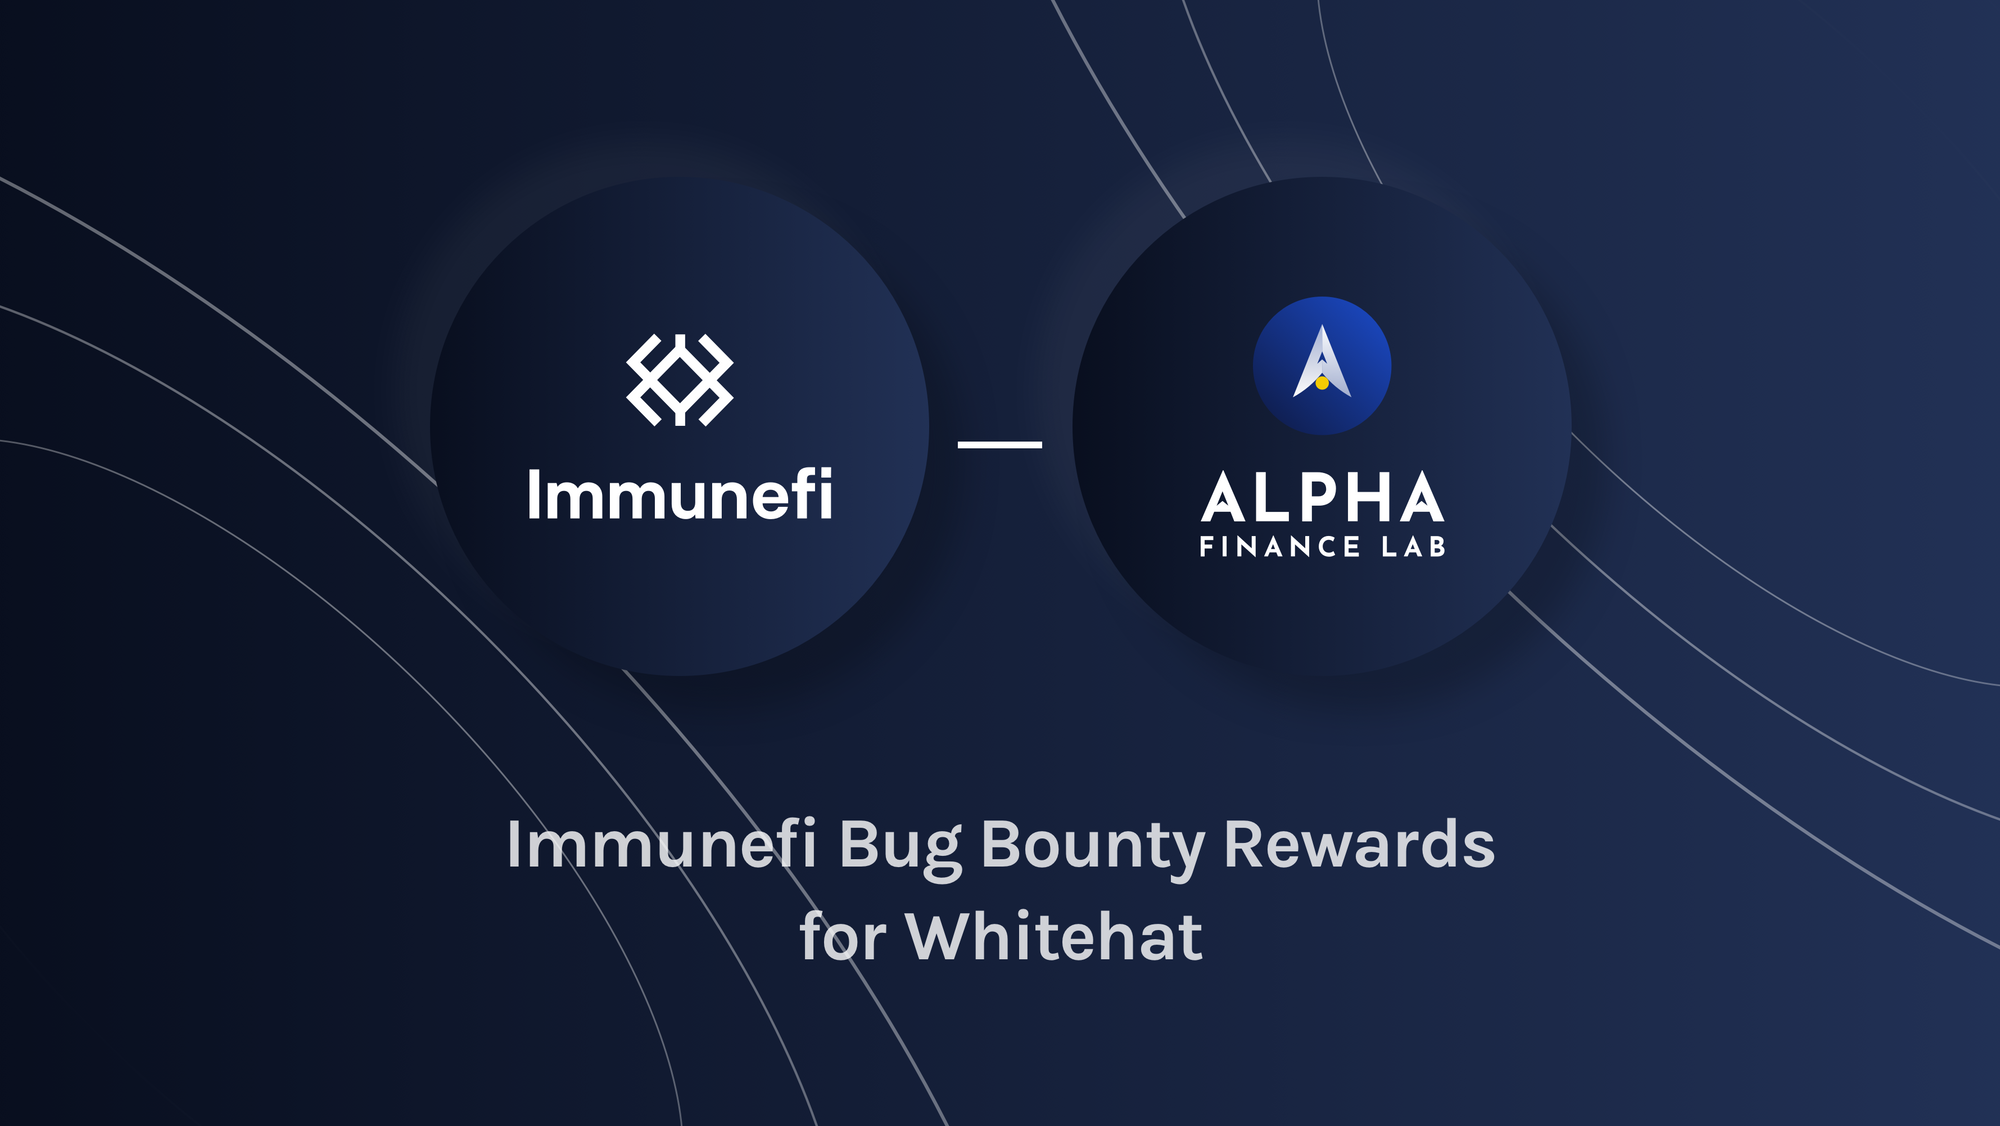 Immunefi Bug Bounty Rewards for Whitehat